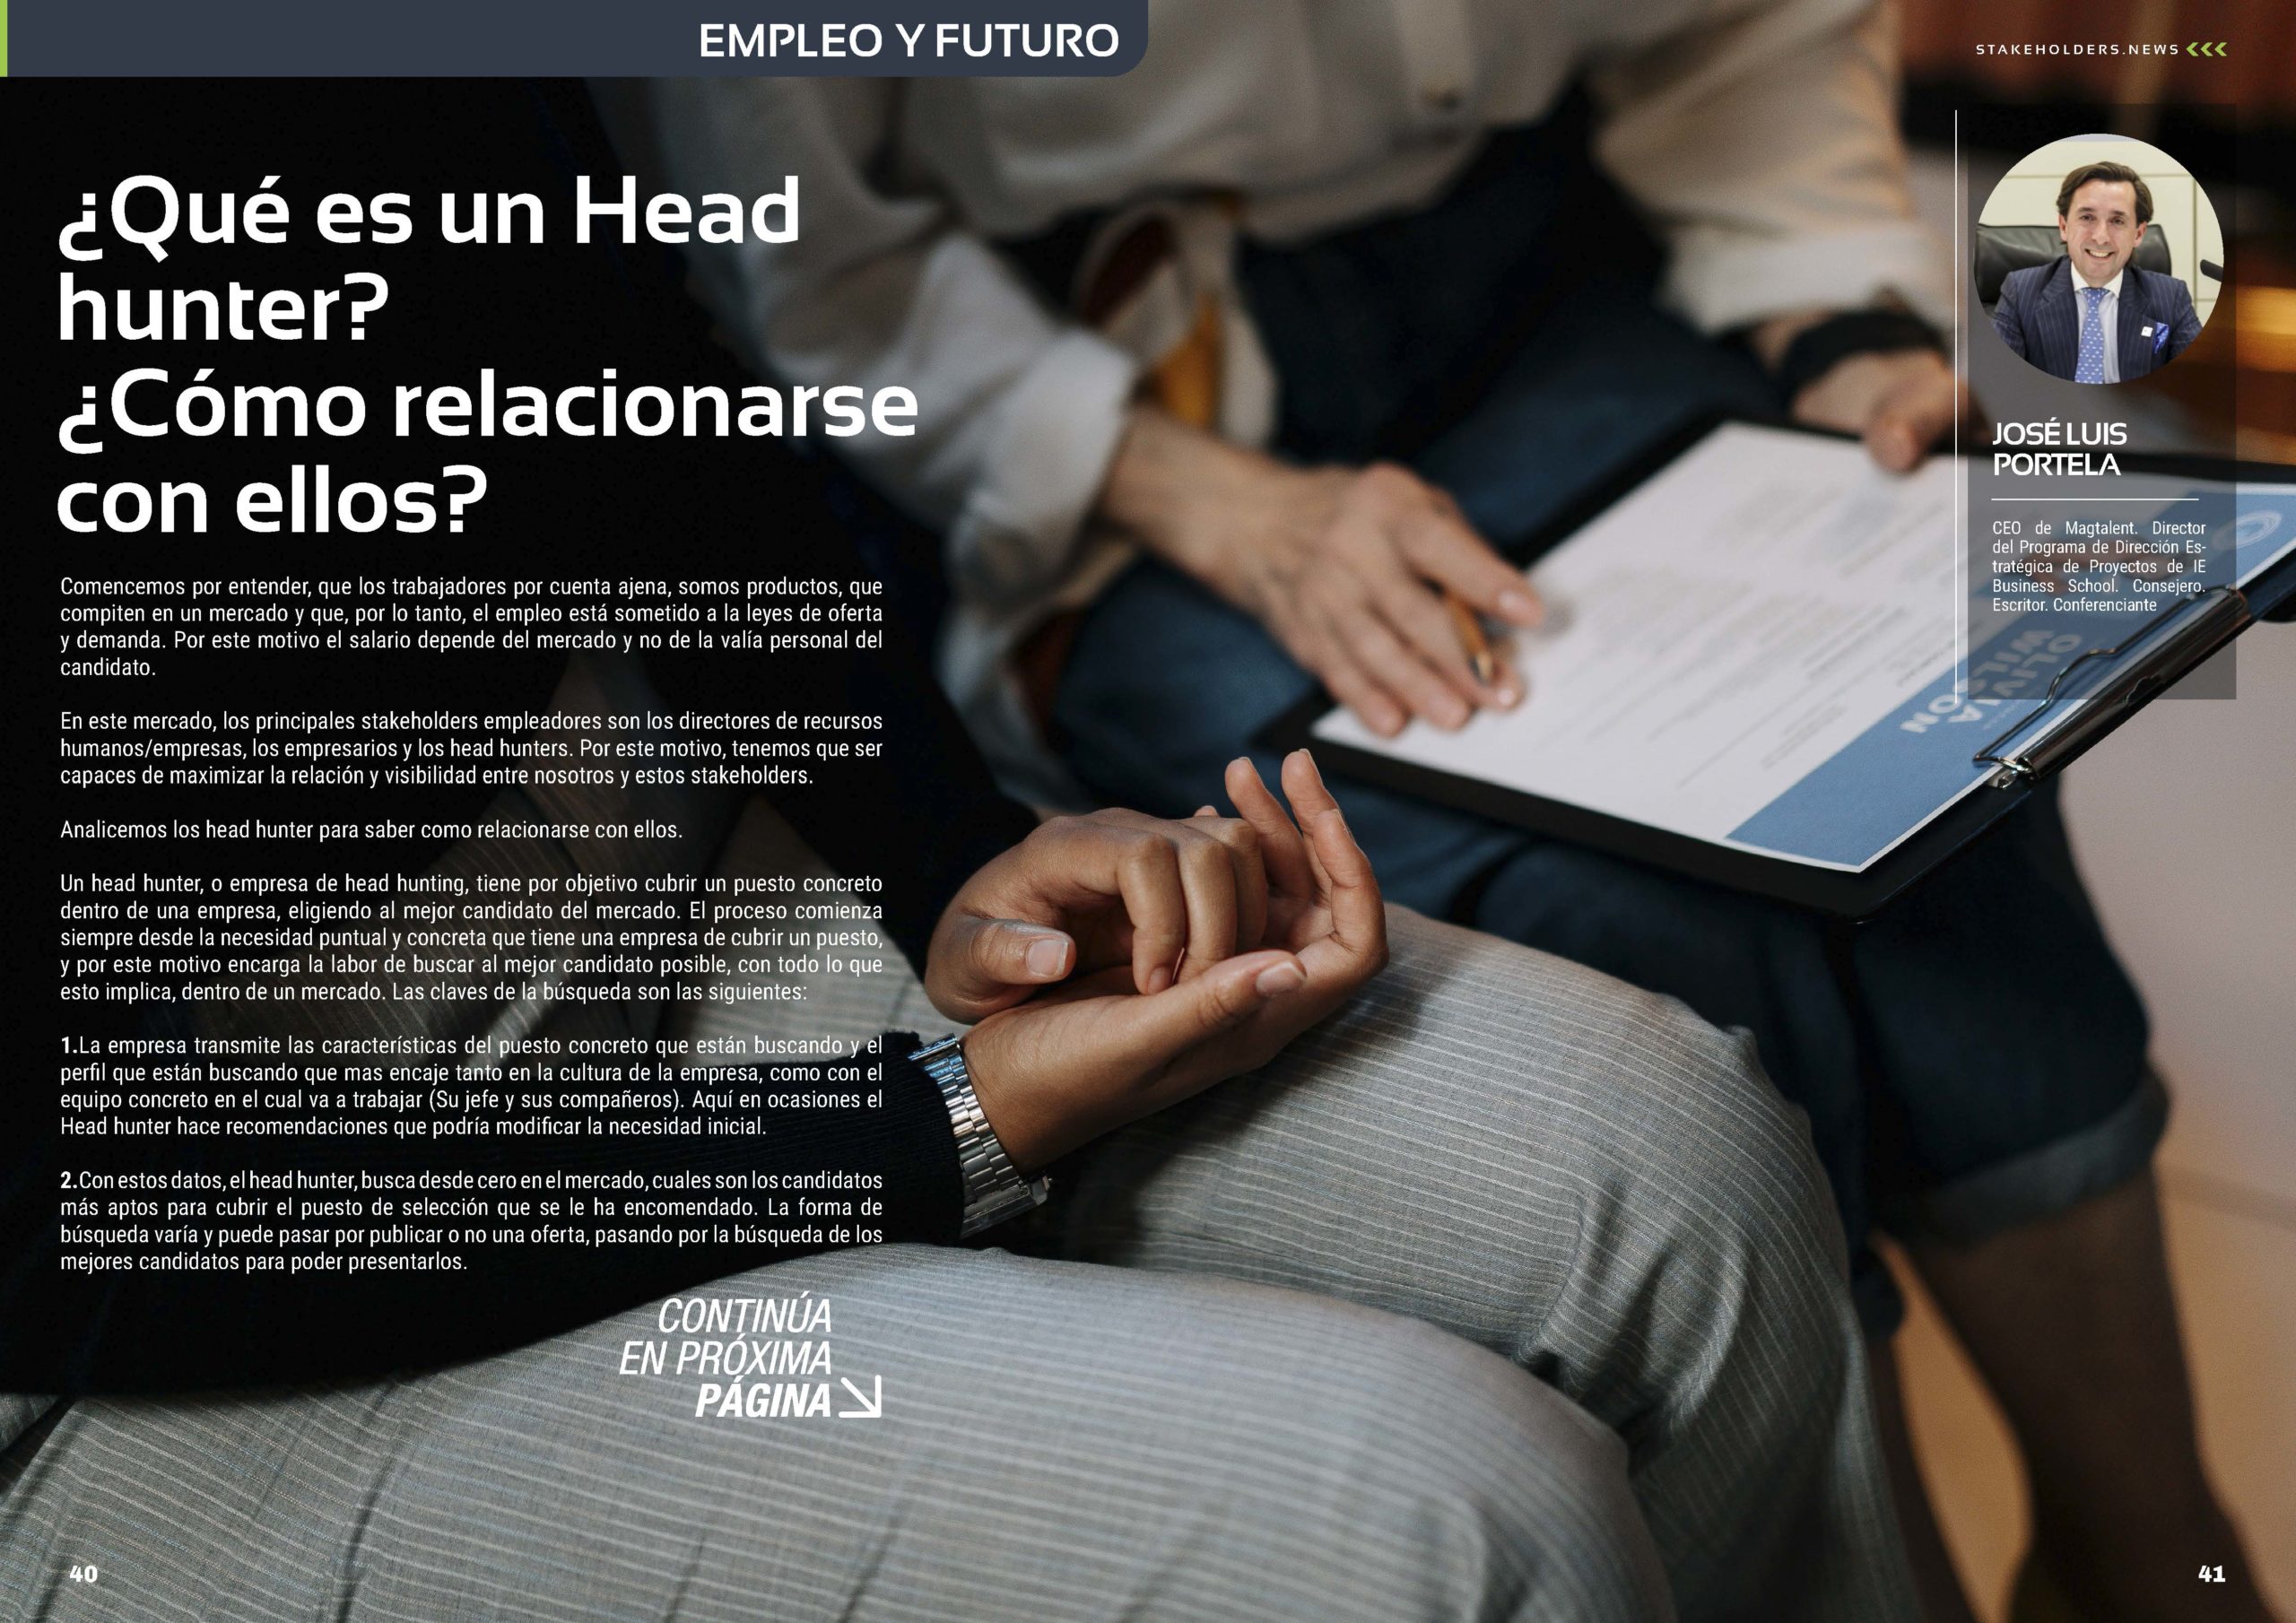 Artículo "¿Qué es un Head hunter? ¿Cómo relacionarse con ellos?" de Jose Luis Portela en la Revista Stakeholders.news